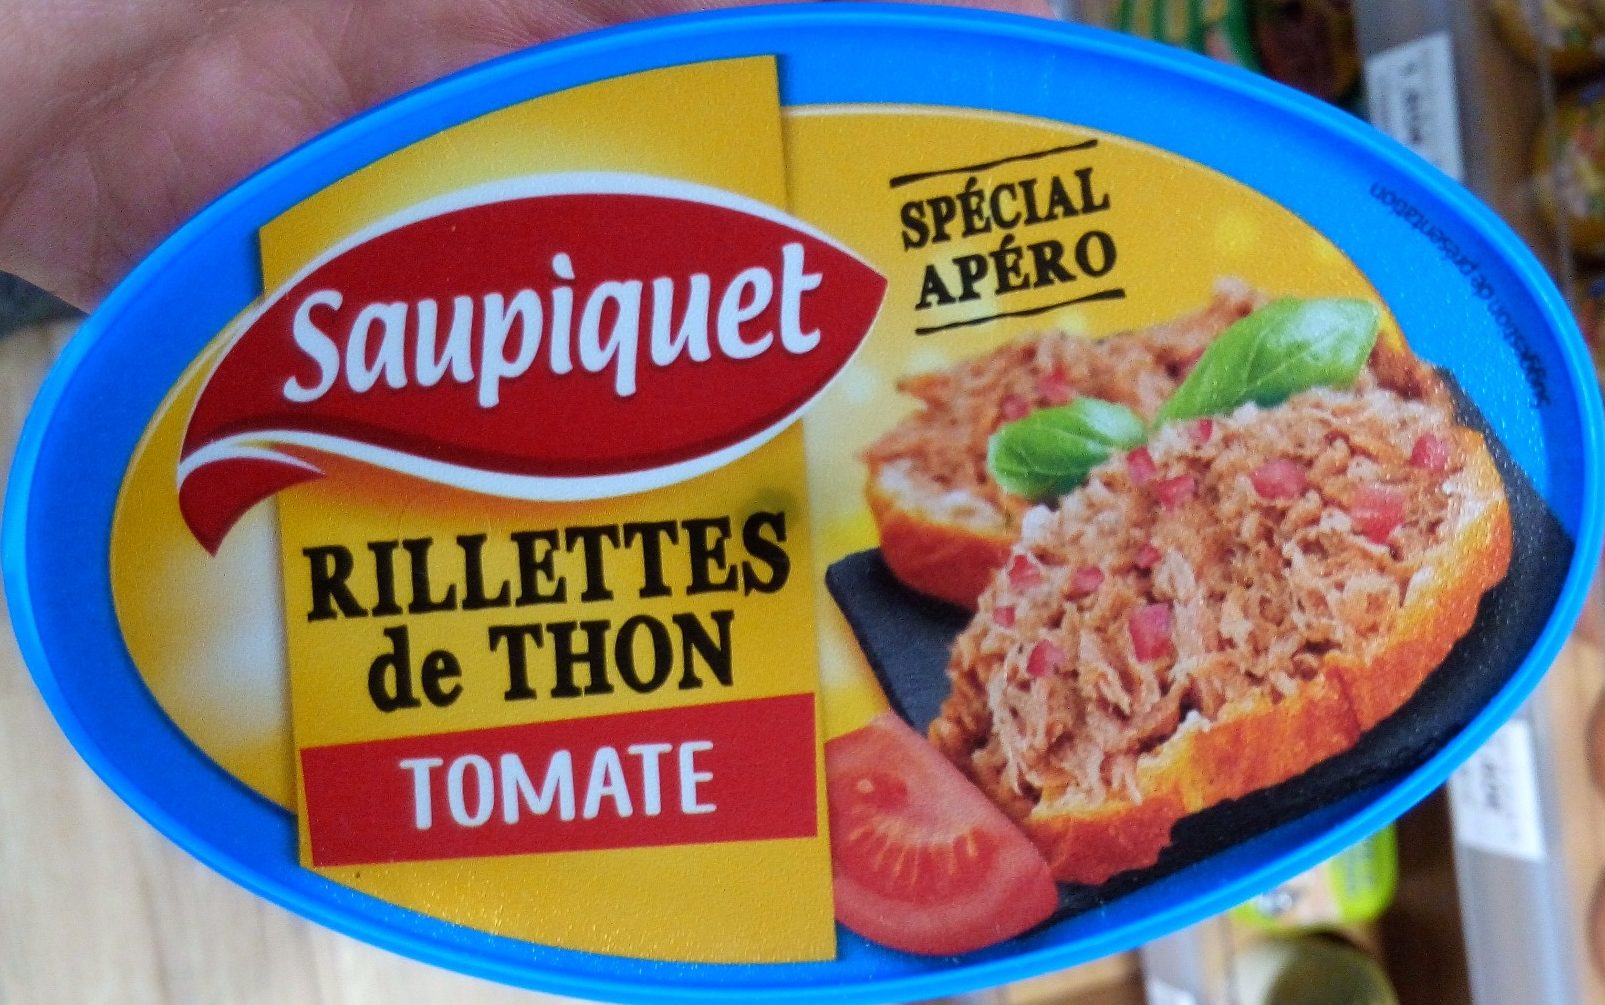 Rillettes de thon tomate - Product - fr